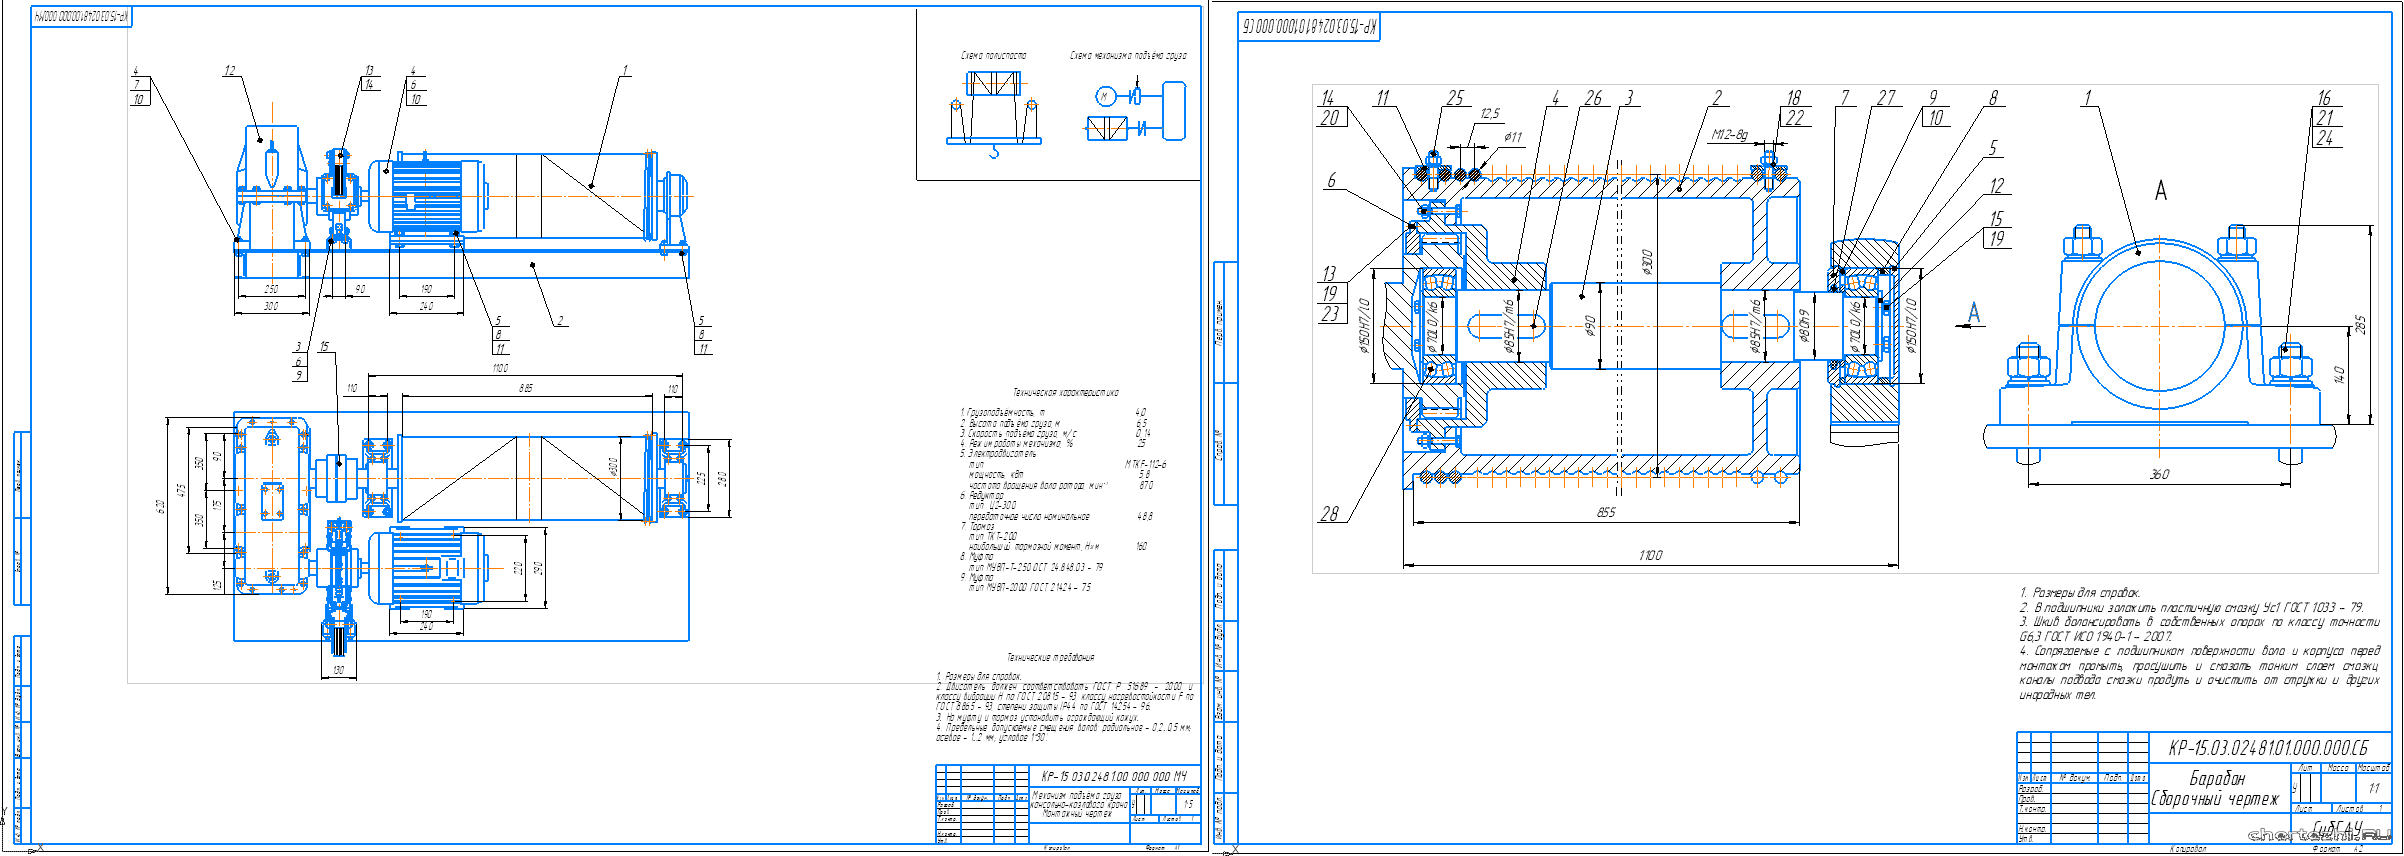 Курсовой проект - Механизм подъёма груза консольно-козлового крана (аналог К-4М)